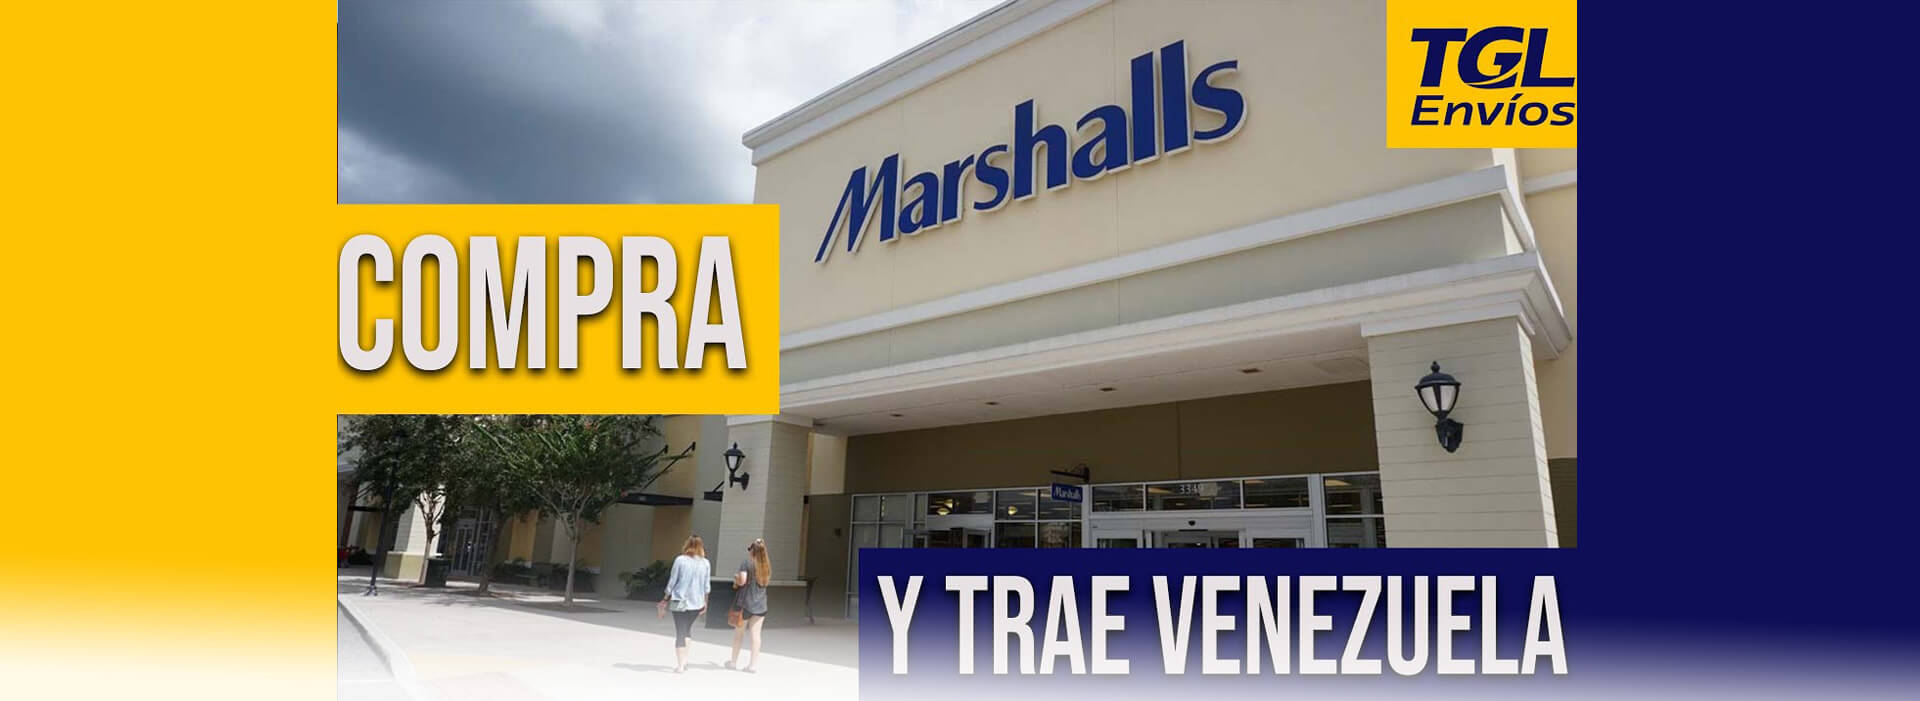 Marshalls Opciones de compra y envío hacia Venezuela